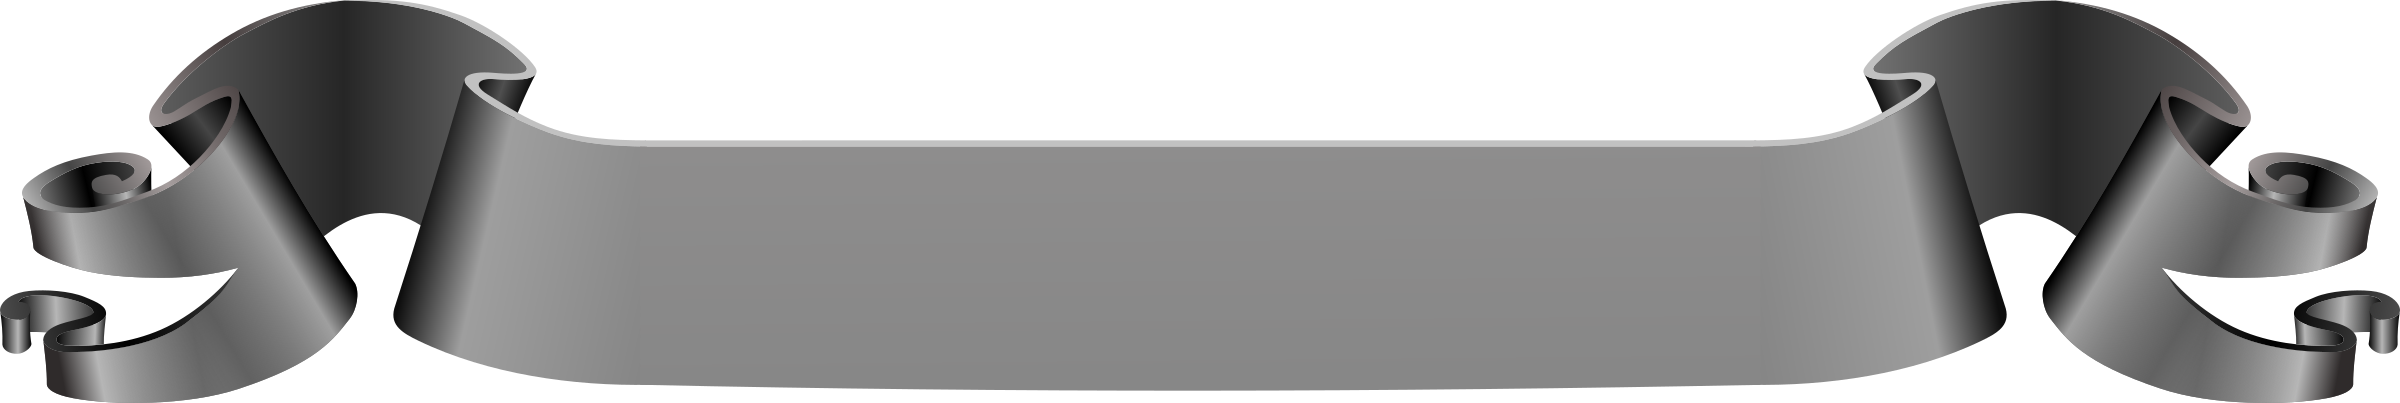 Bannière grise PNG Image Transparente